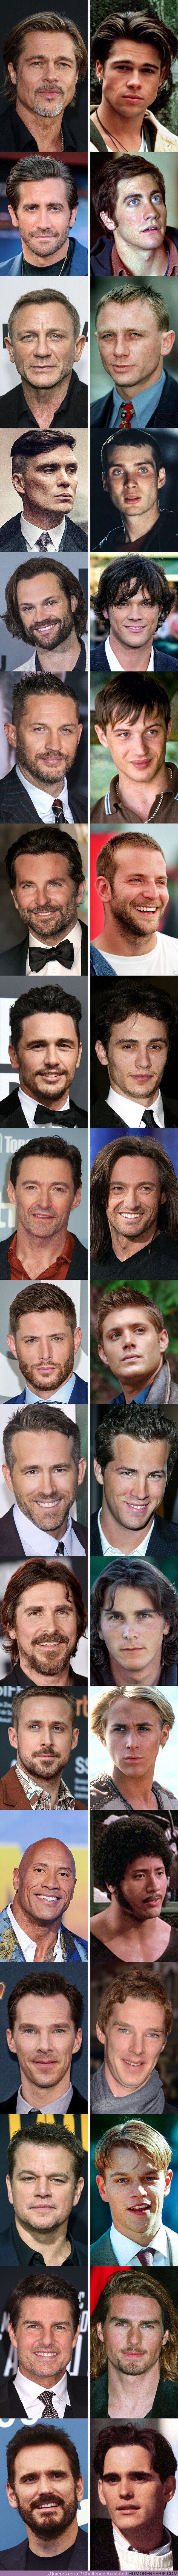 75869 - GALERÍA: 18 actores que con la edad se han vuelto increíblemente guapos